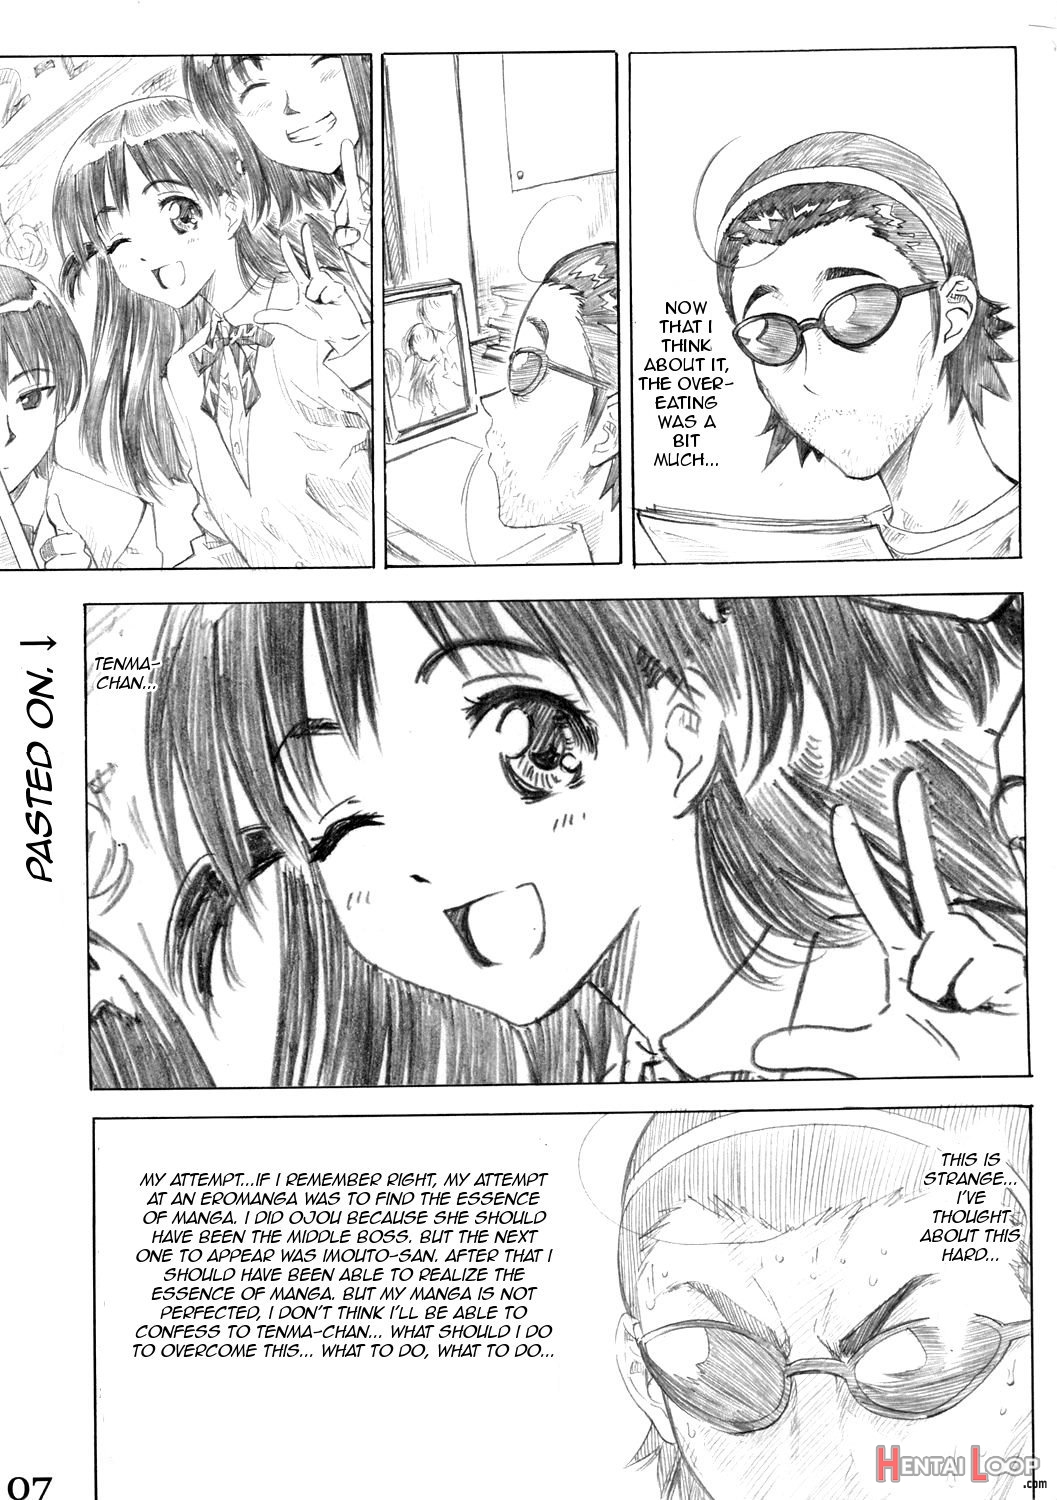 Harima No Manga-michi Vol. 3 page 6